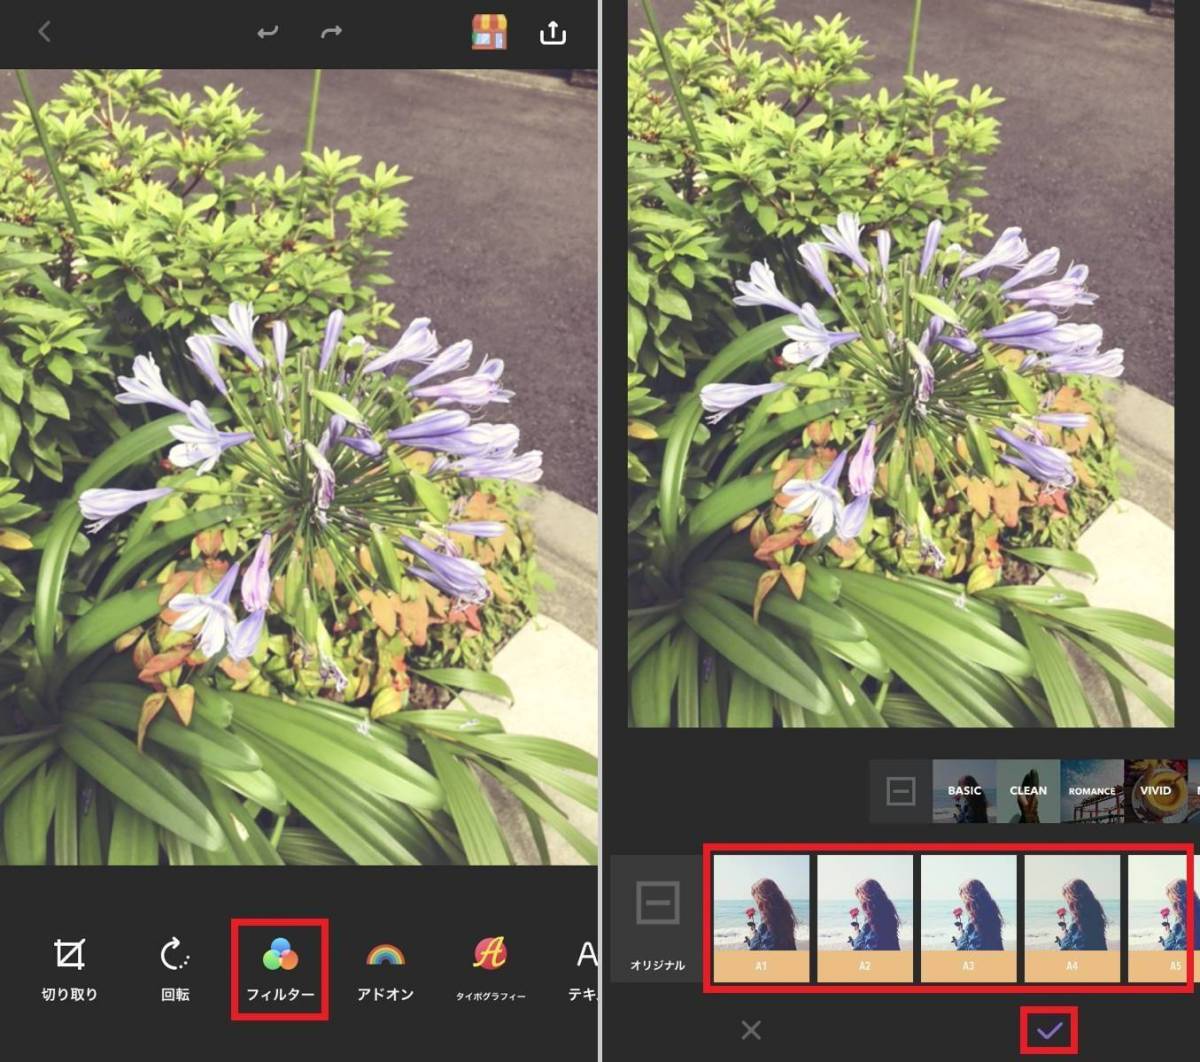 レトロ加工 ヴィンテージ加工が超簡単 機能性抜群のカメラアプリ5選の画像 19枚目 Appliv Topics